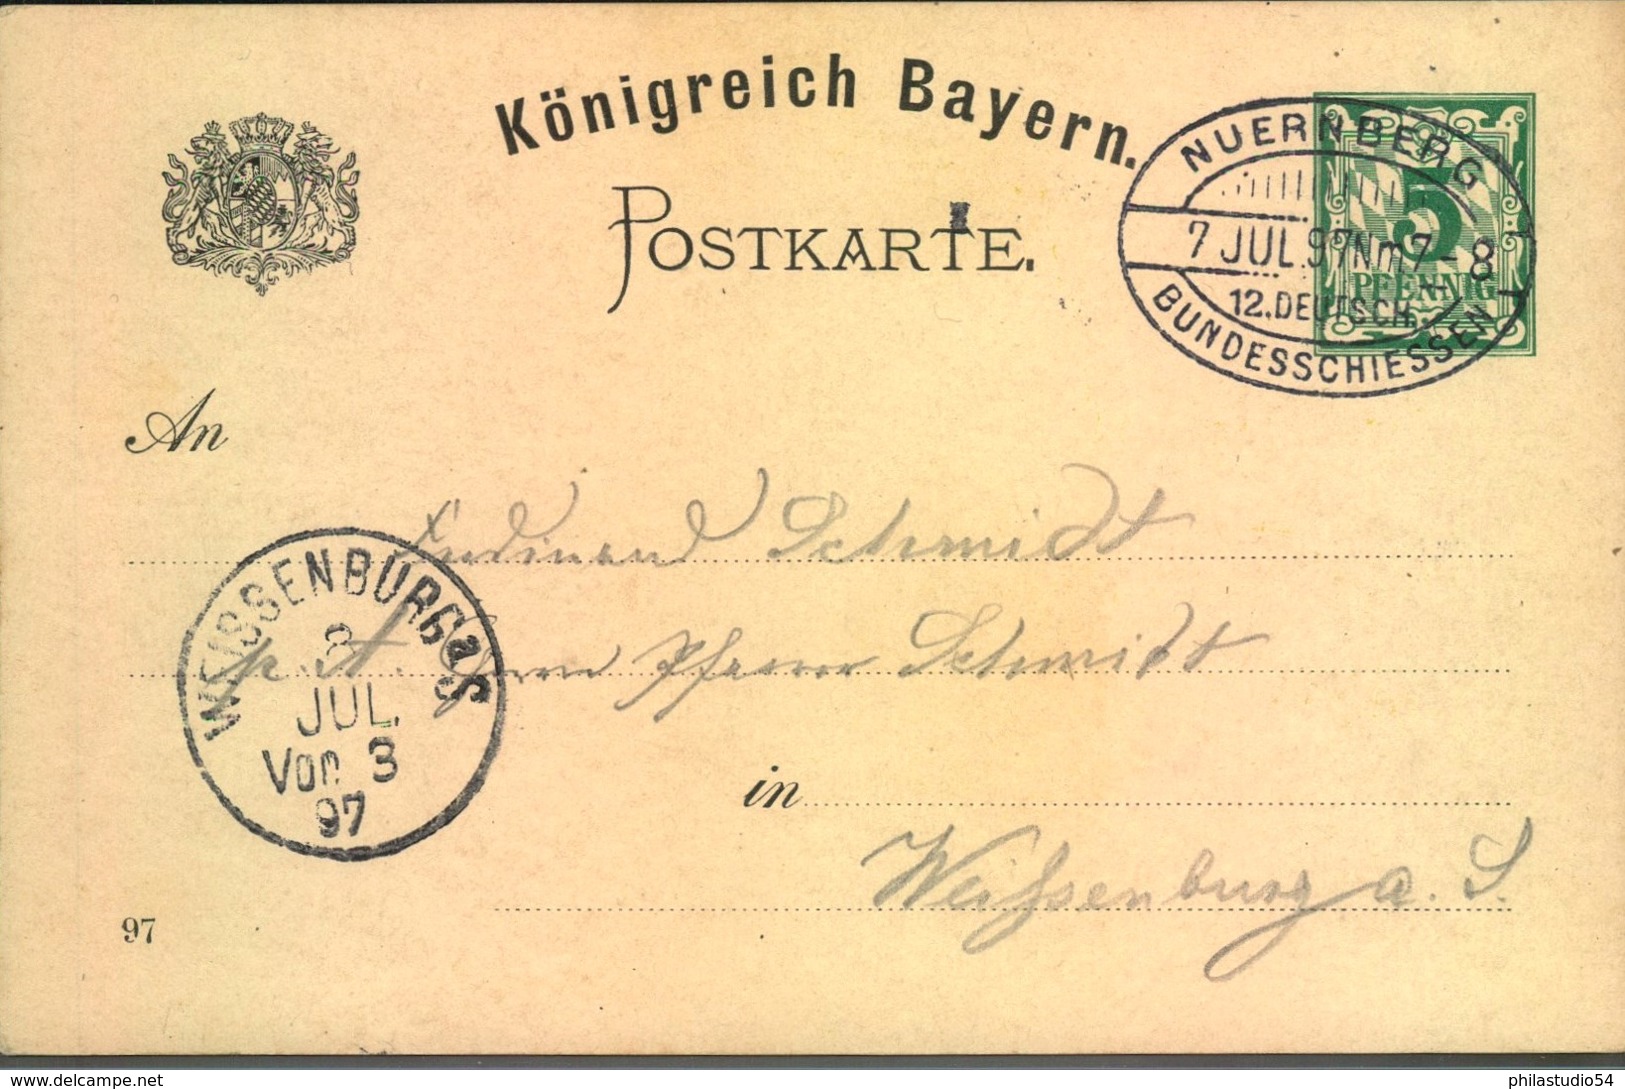 1907, "XII. Deutsches Bundesschissen" 5 Pfg. Privatganzsache Mit Sonderstempel - Ganzsachen